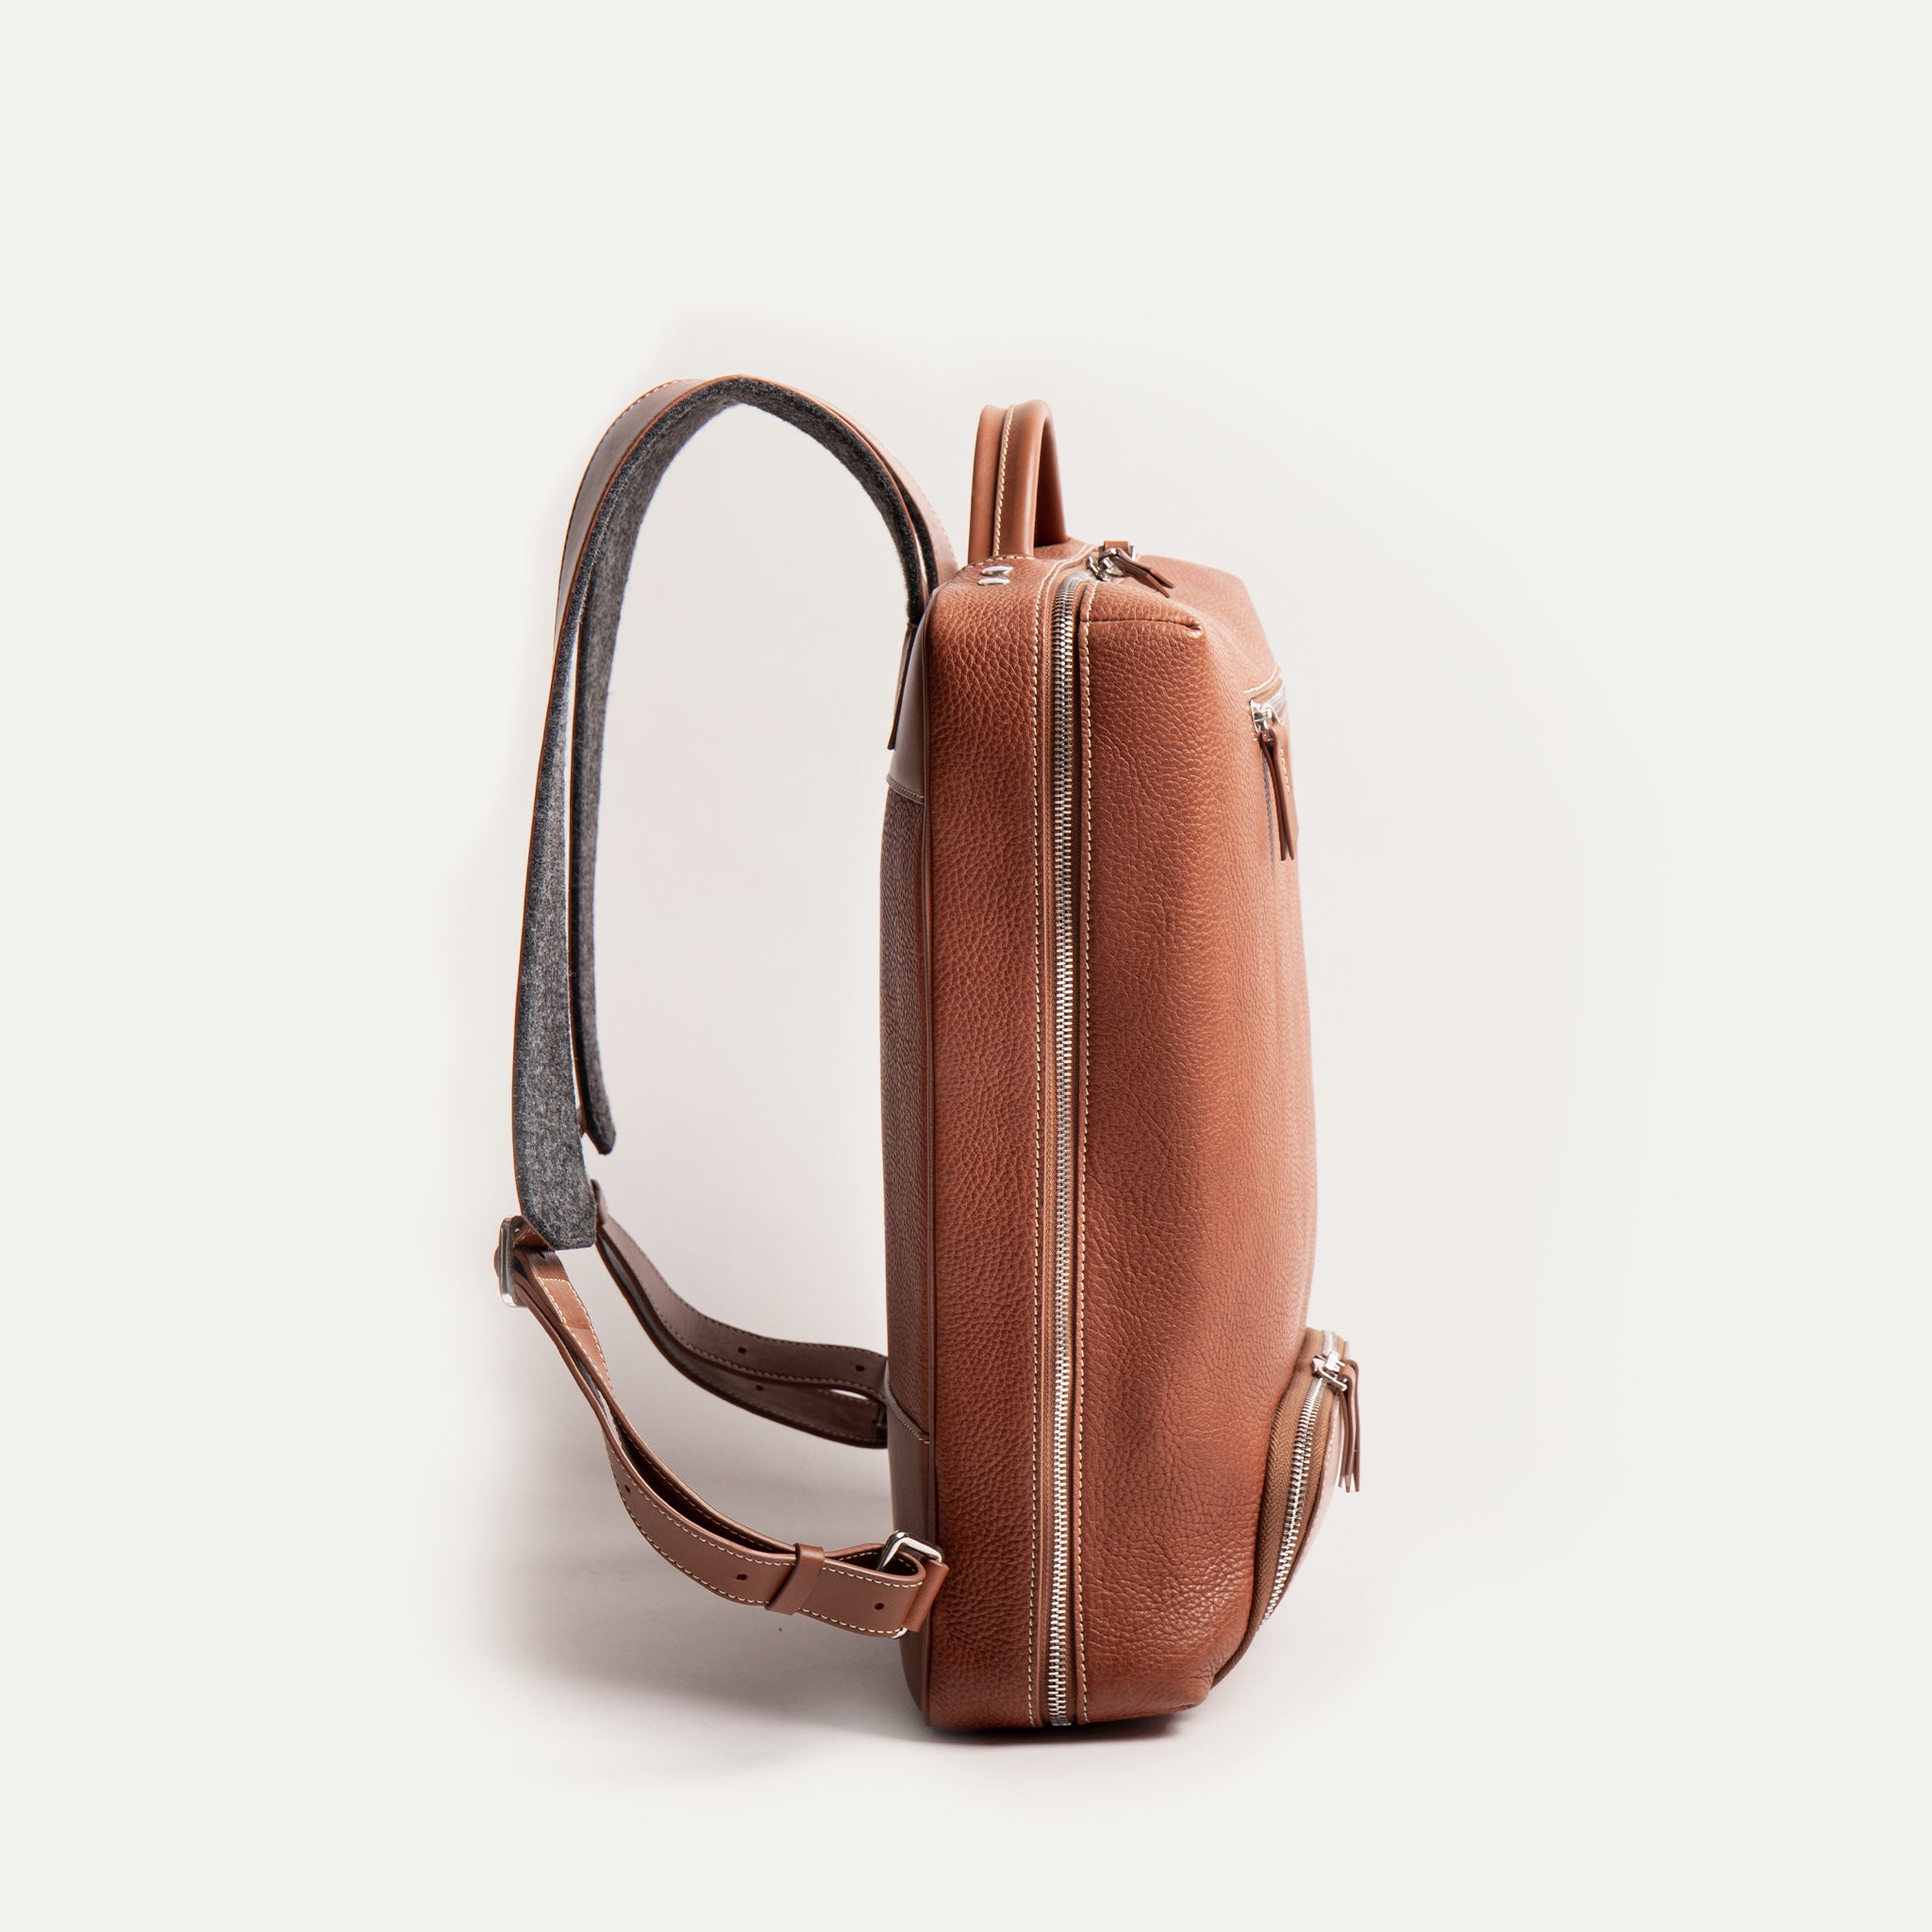 Notre sac à dos Giani est idéal pour transporter votre ordinateur portable et tous vos accessoires de bureau. 